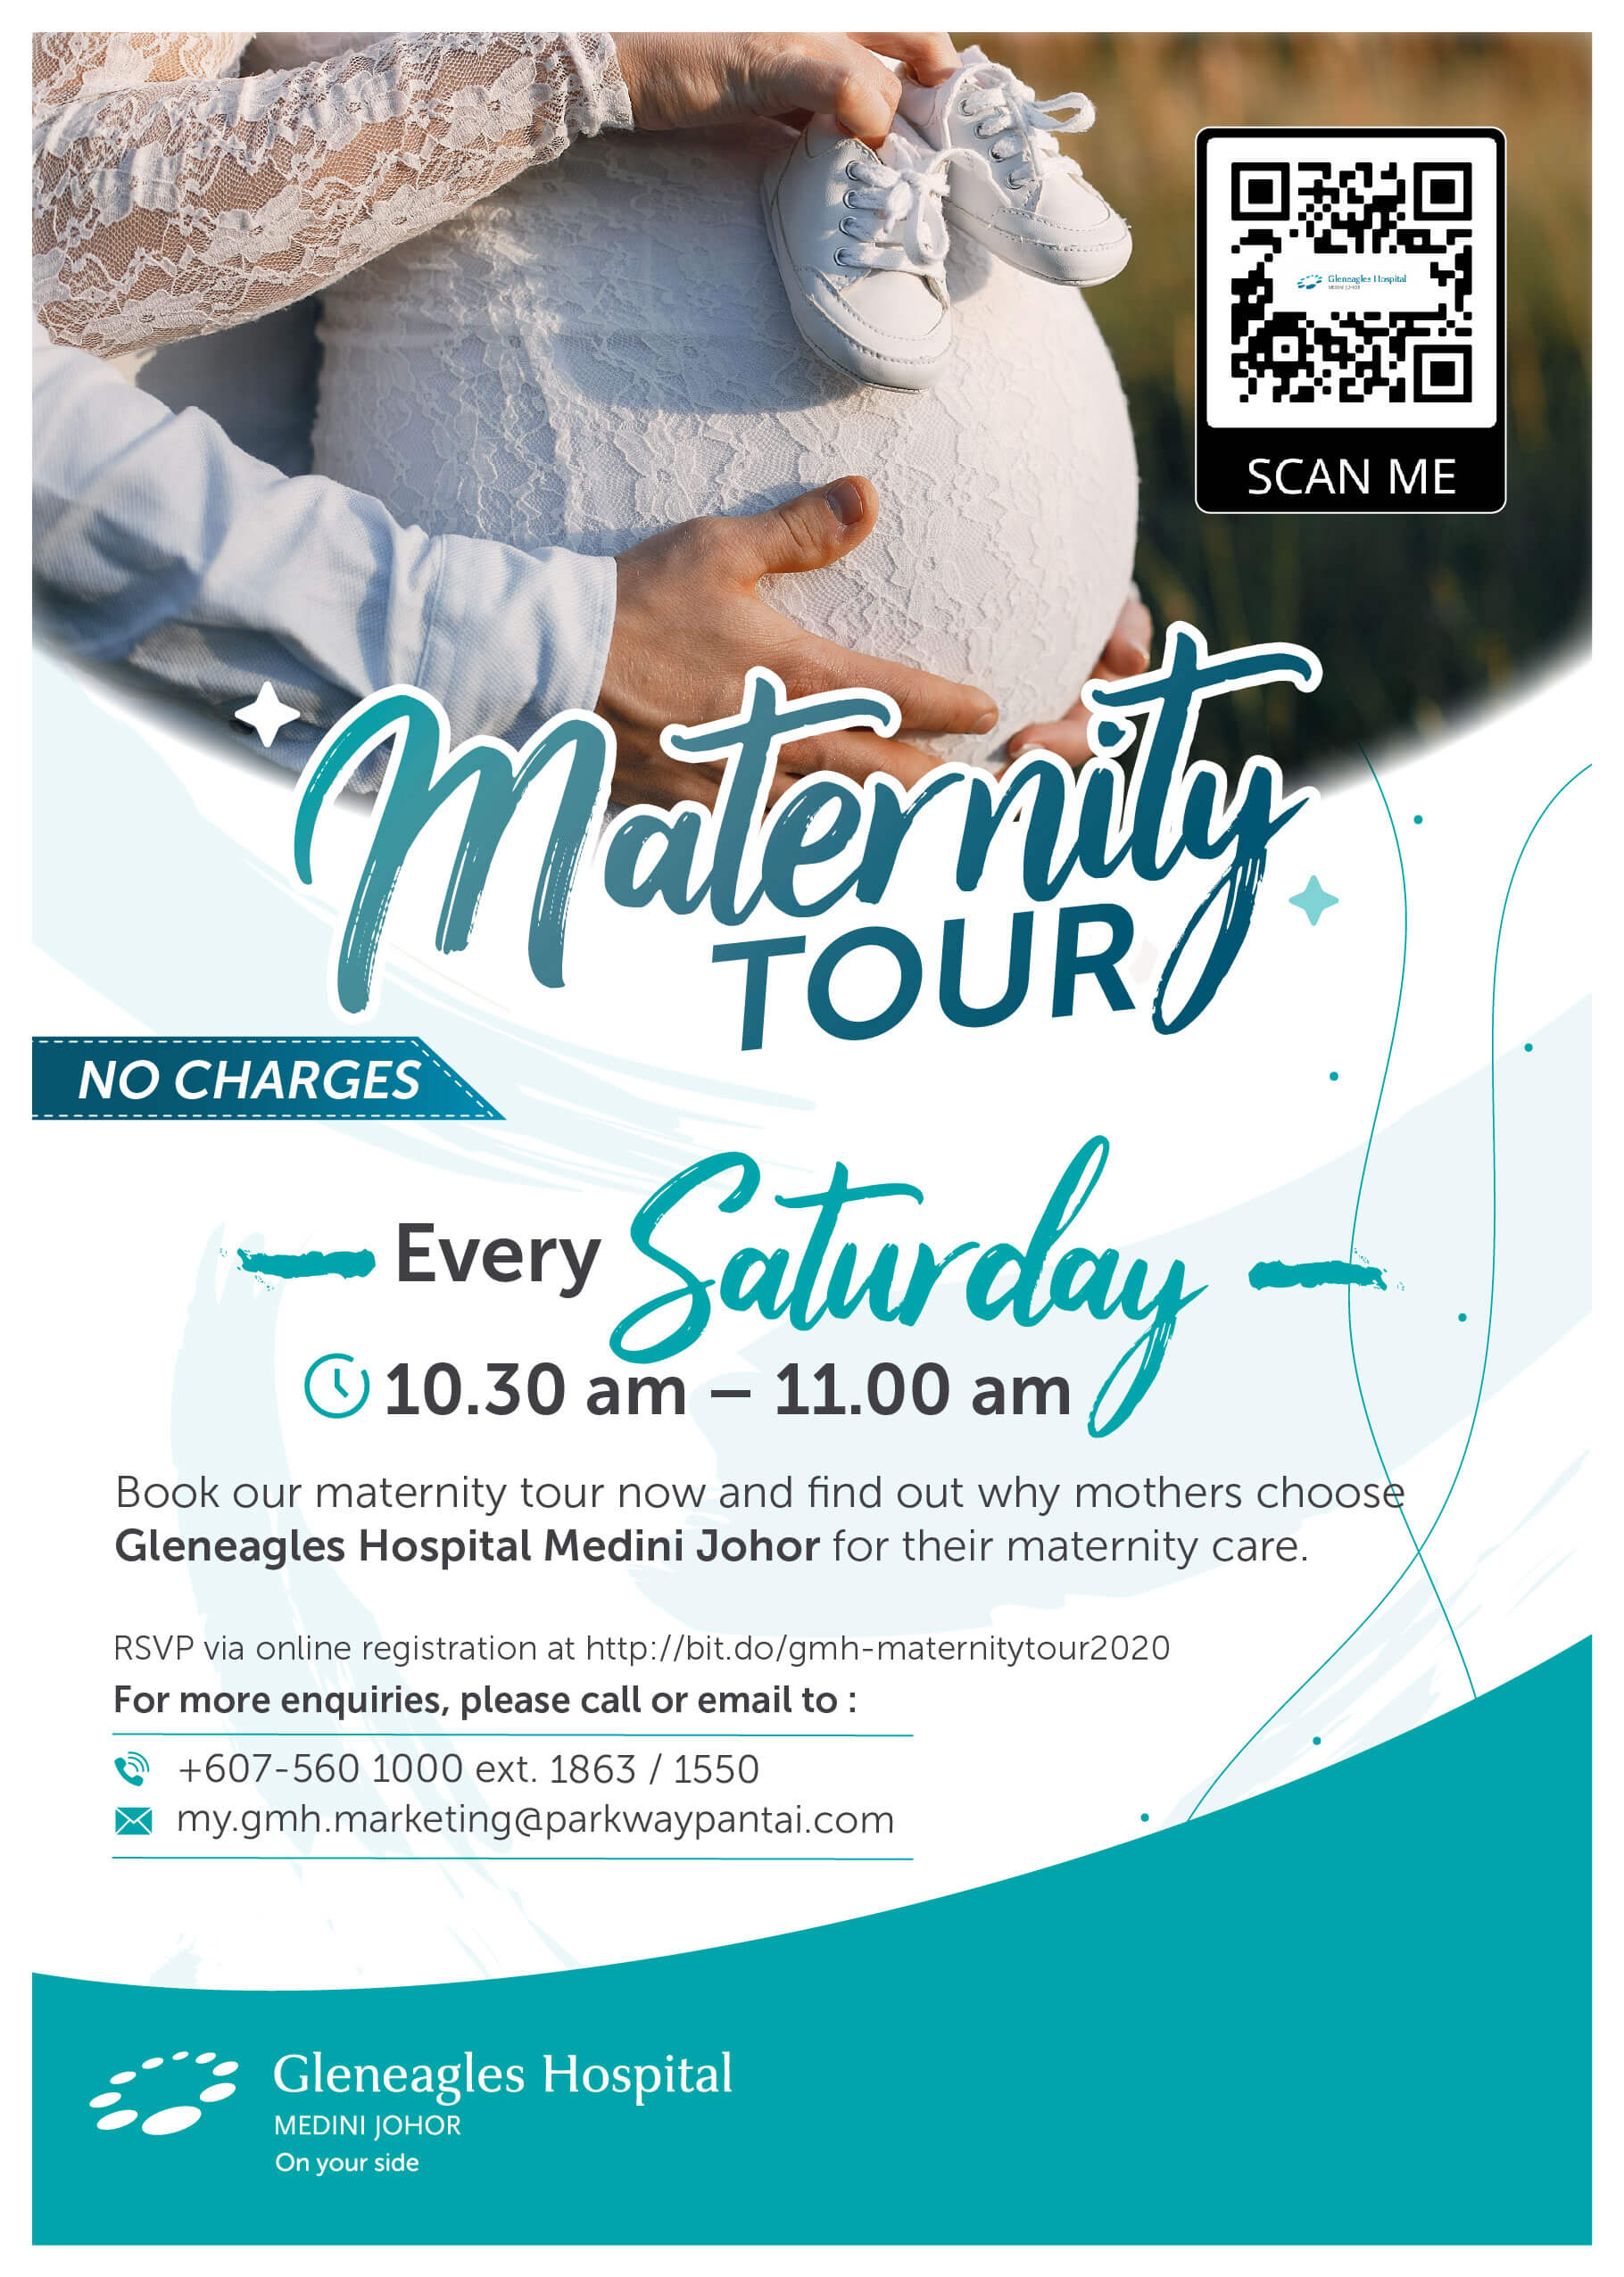 mater maternity tour